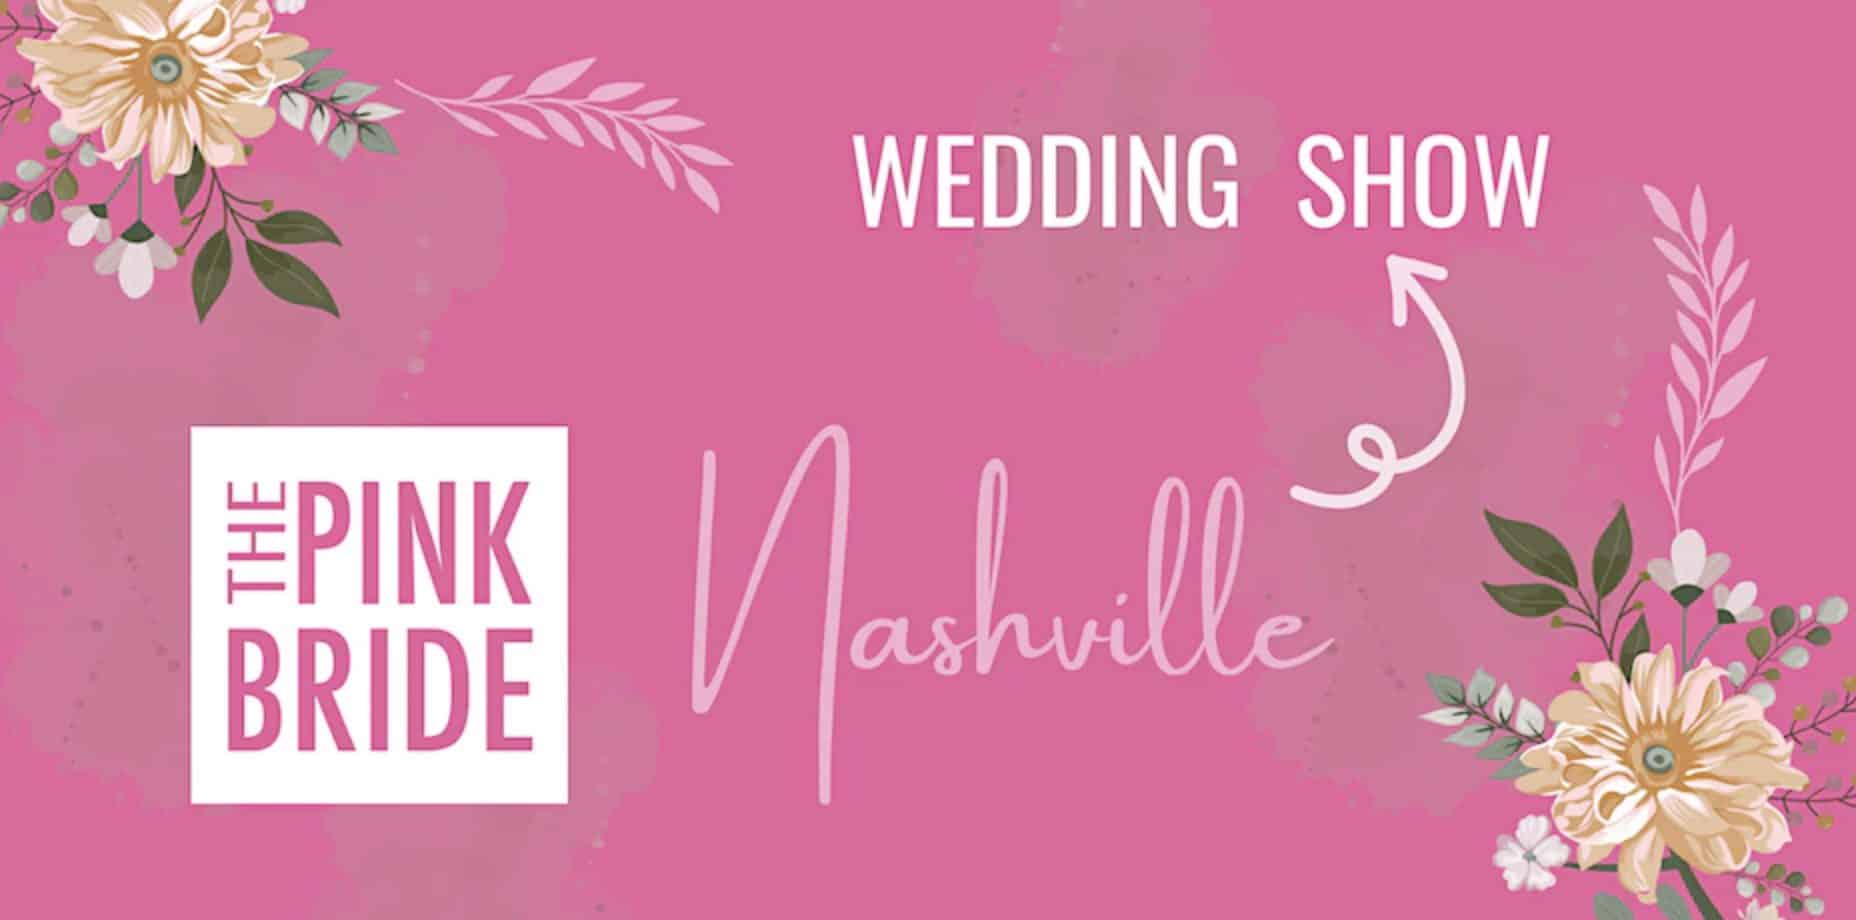 Nashville Pink Bride Wedding Show in Nashville, Tennessee.